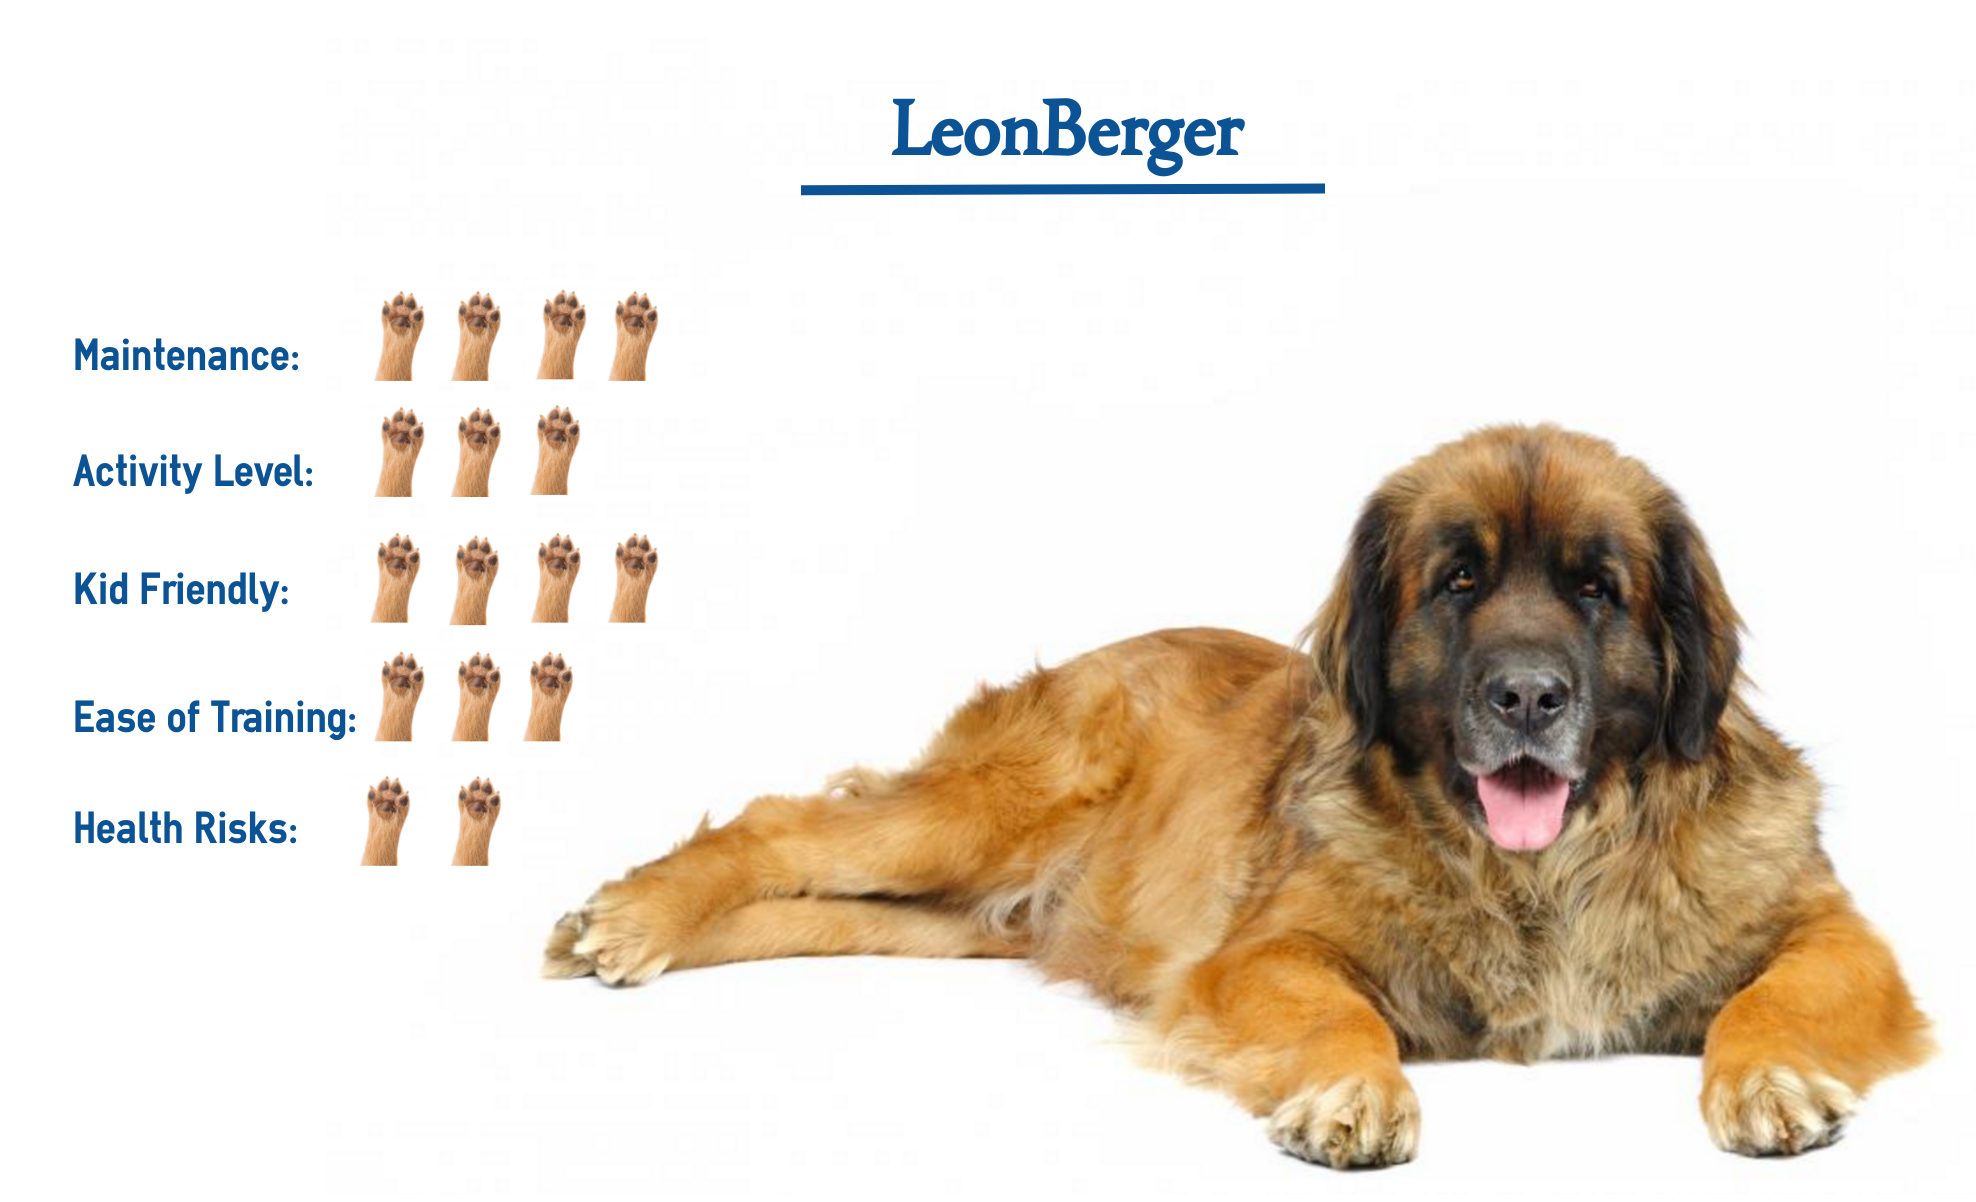 leonberger dog breeds